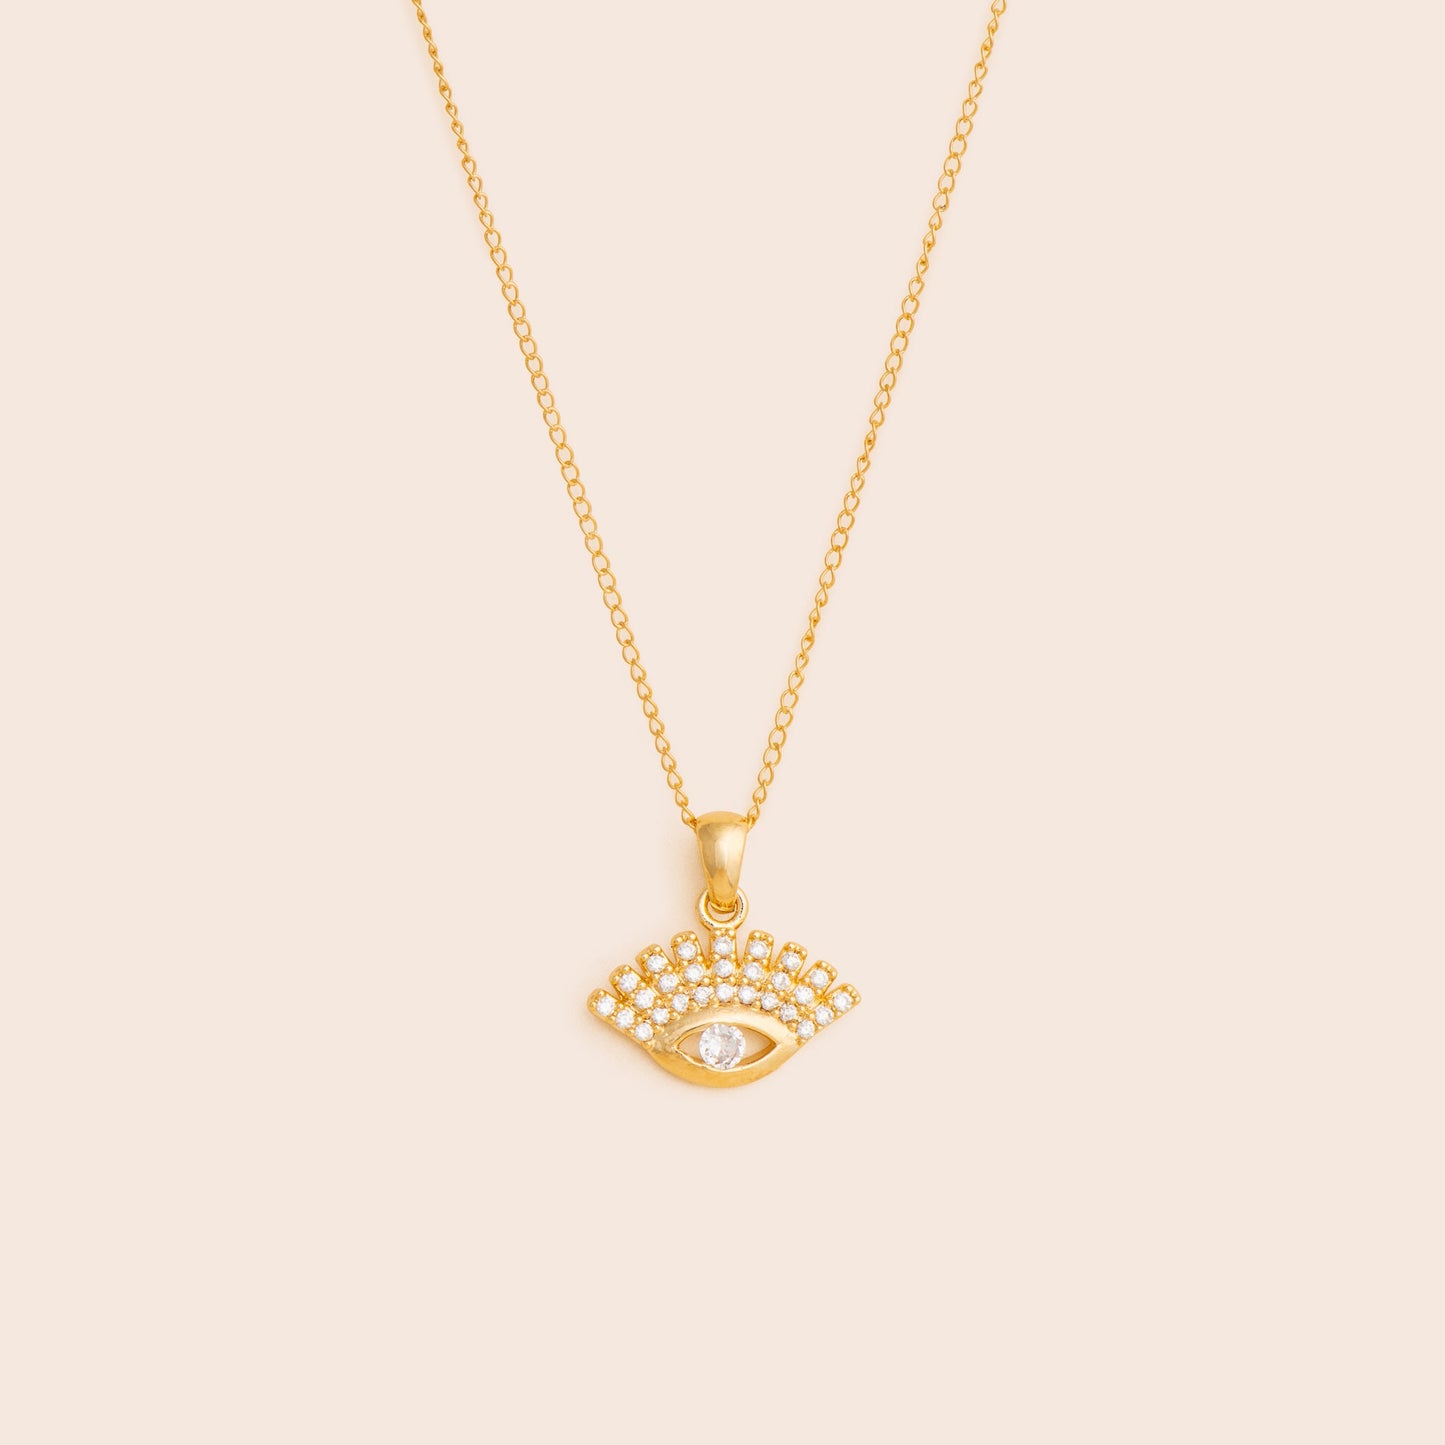 Sparkly Evil Eye Necklace - Gold Filled - Gemlet